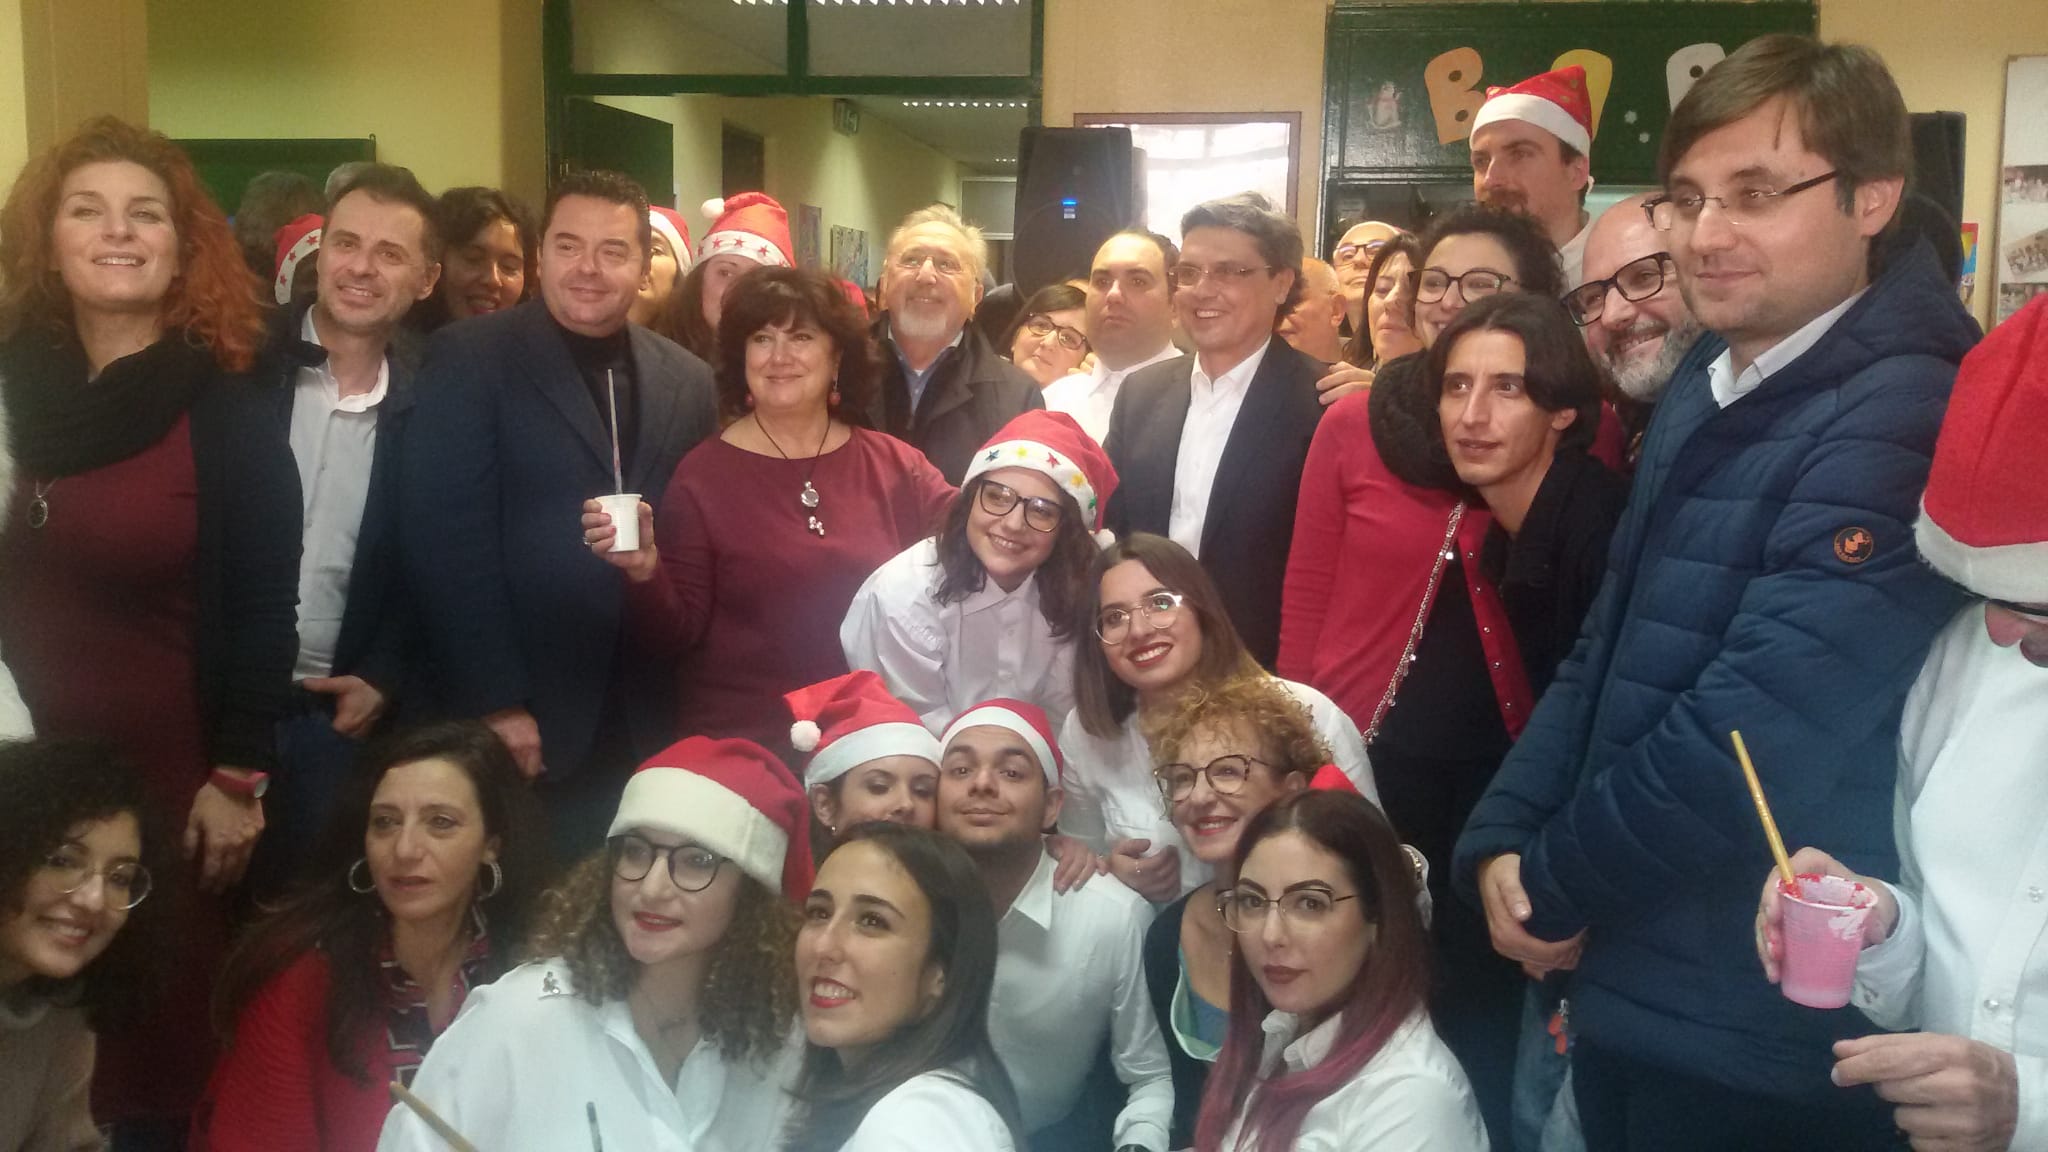 ASP Catania - auguri centro diurno dsm catania sud - 19.12.2019